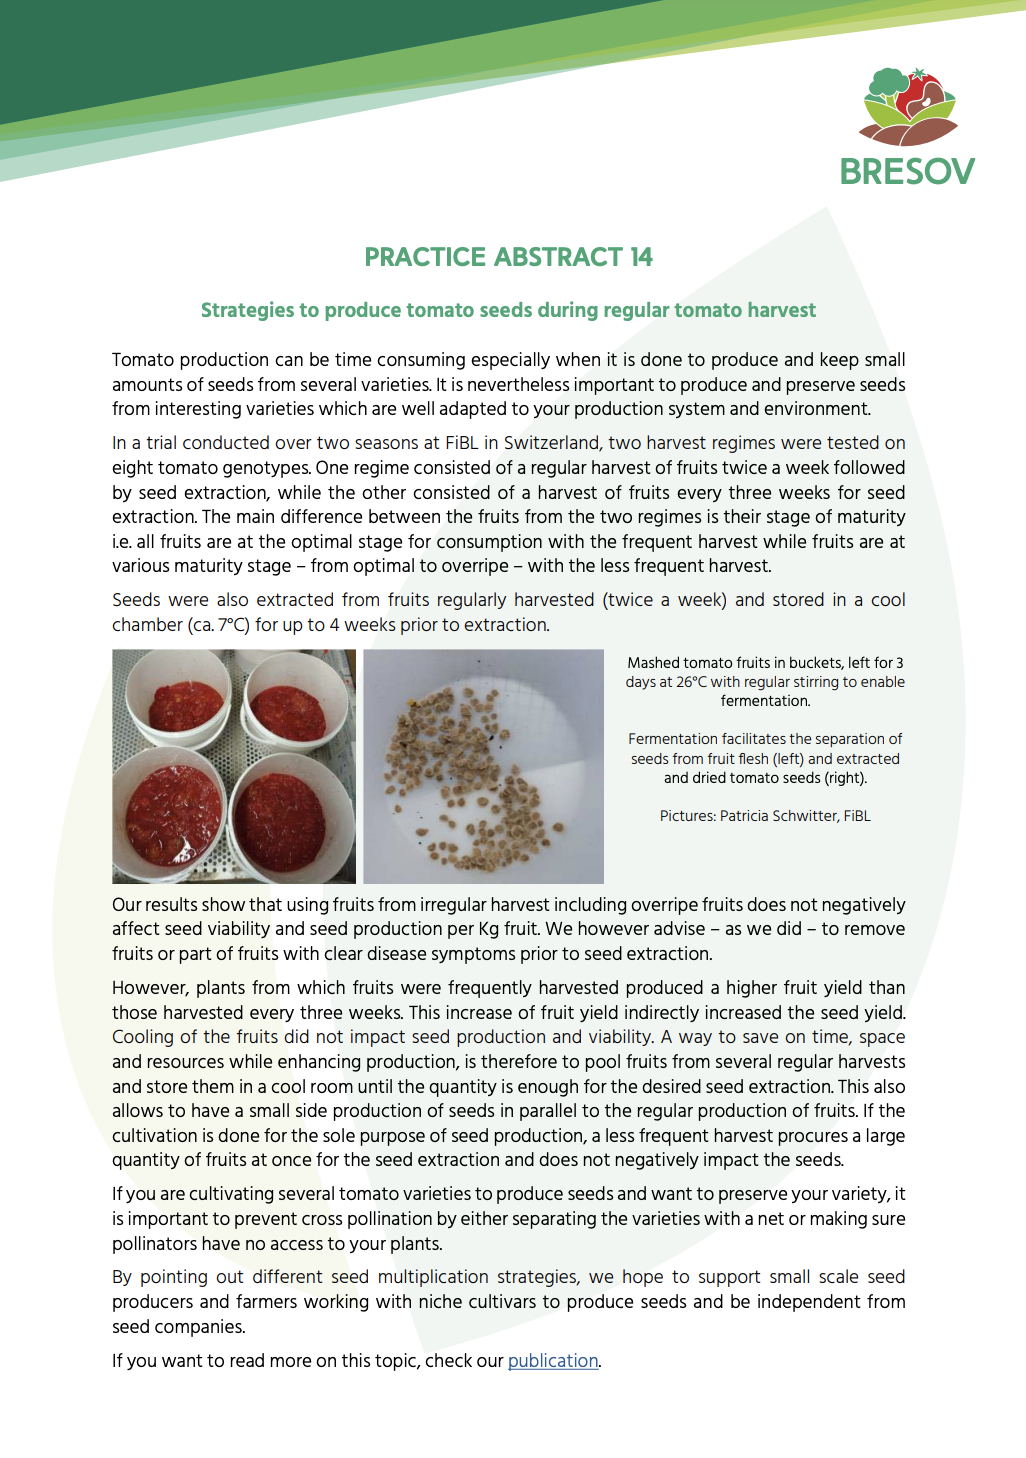 Στρατηγικές για την παραγωγή σπόρων τομάτας κατά τη διάρκεια της τακτικής συγκομιδής τομάτας (BRESOV Practice Abstract)